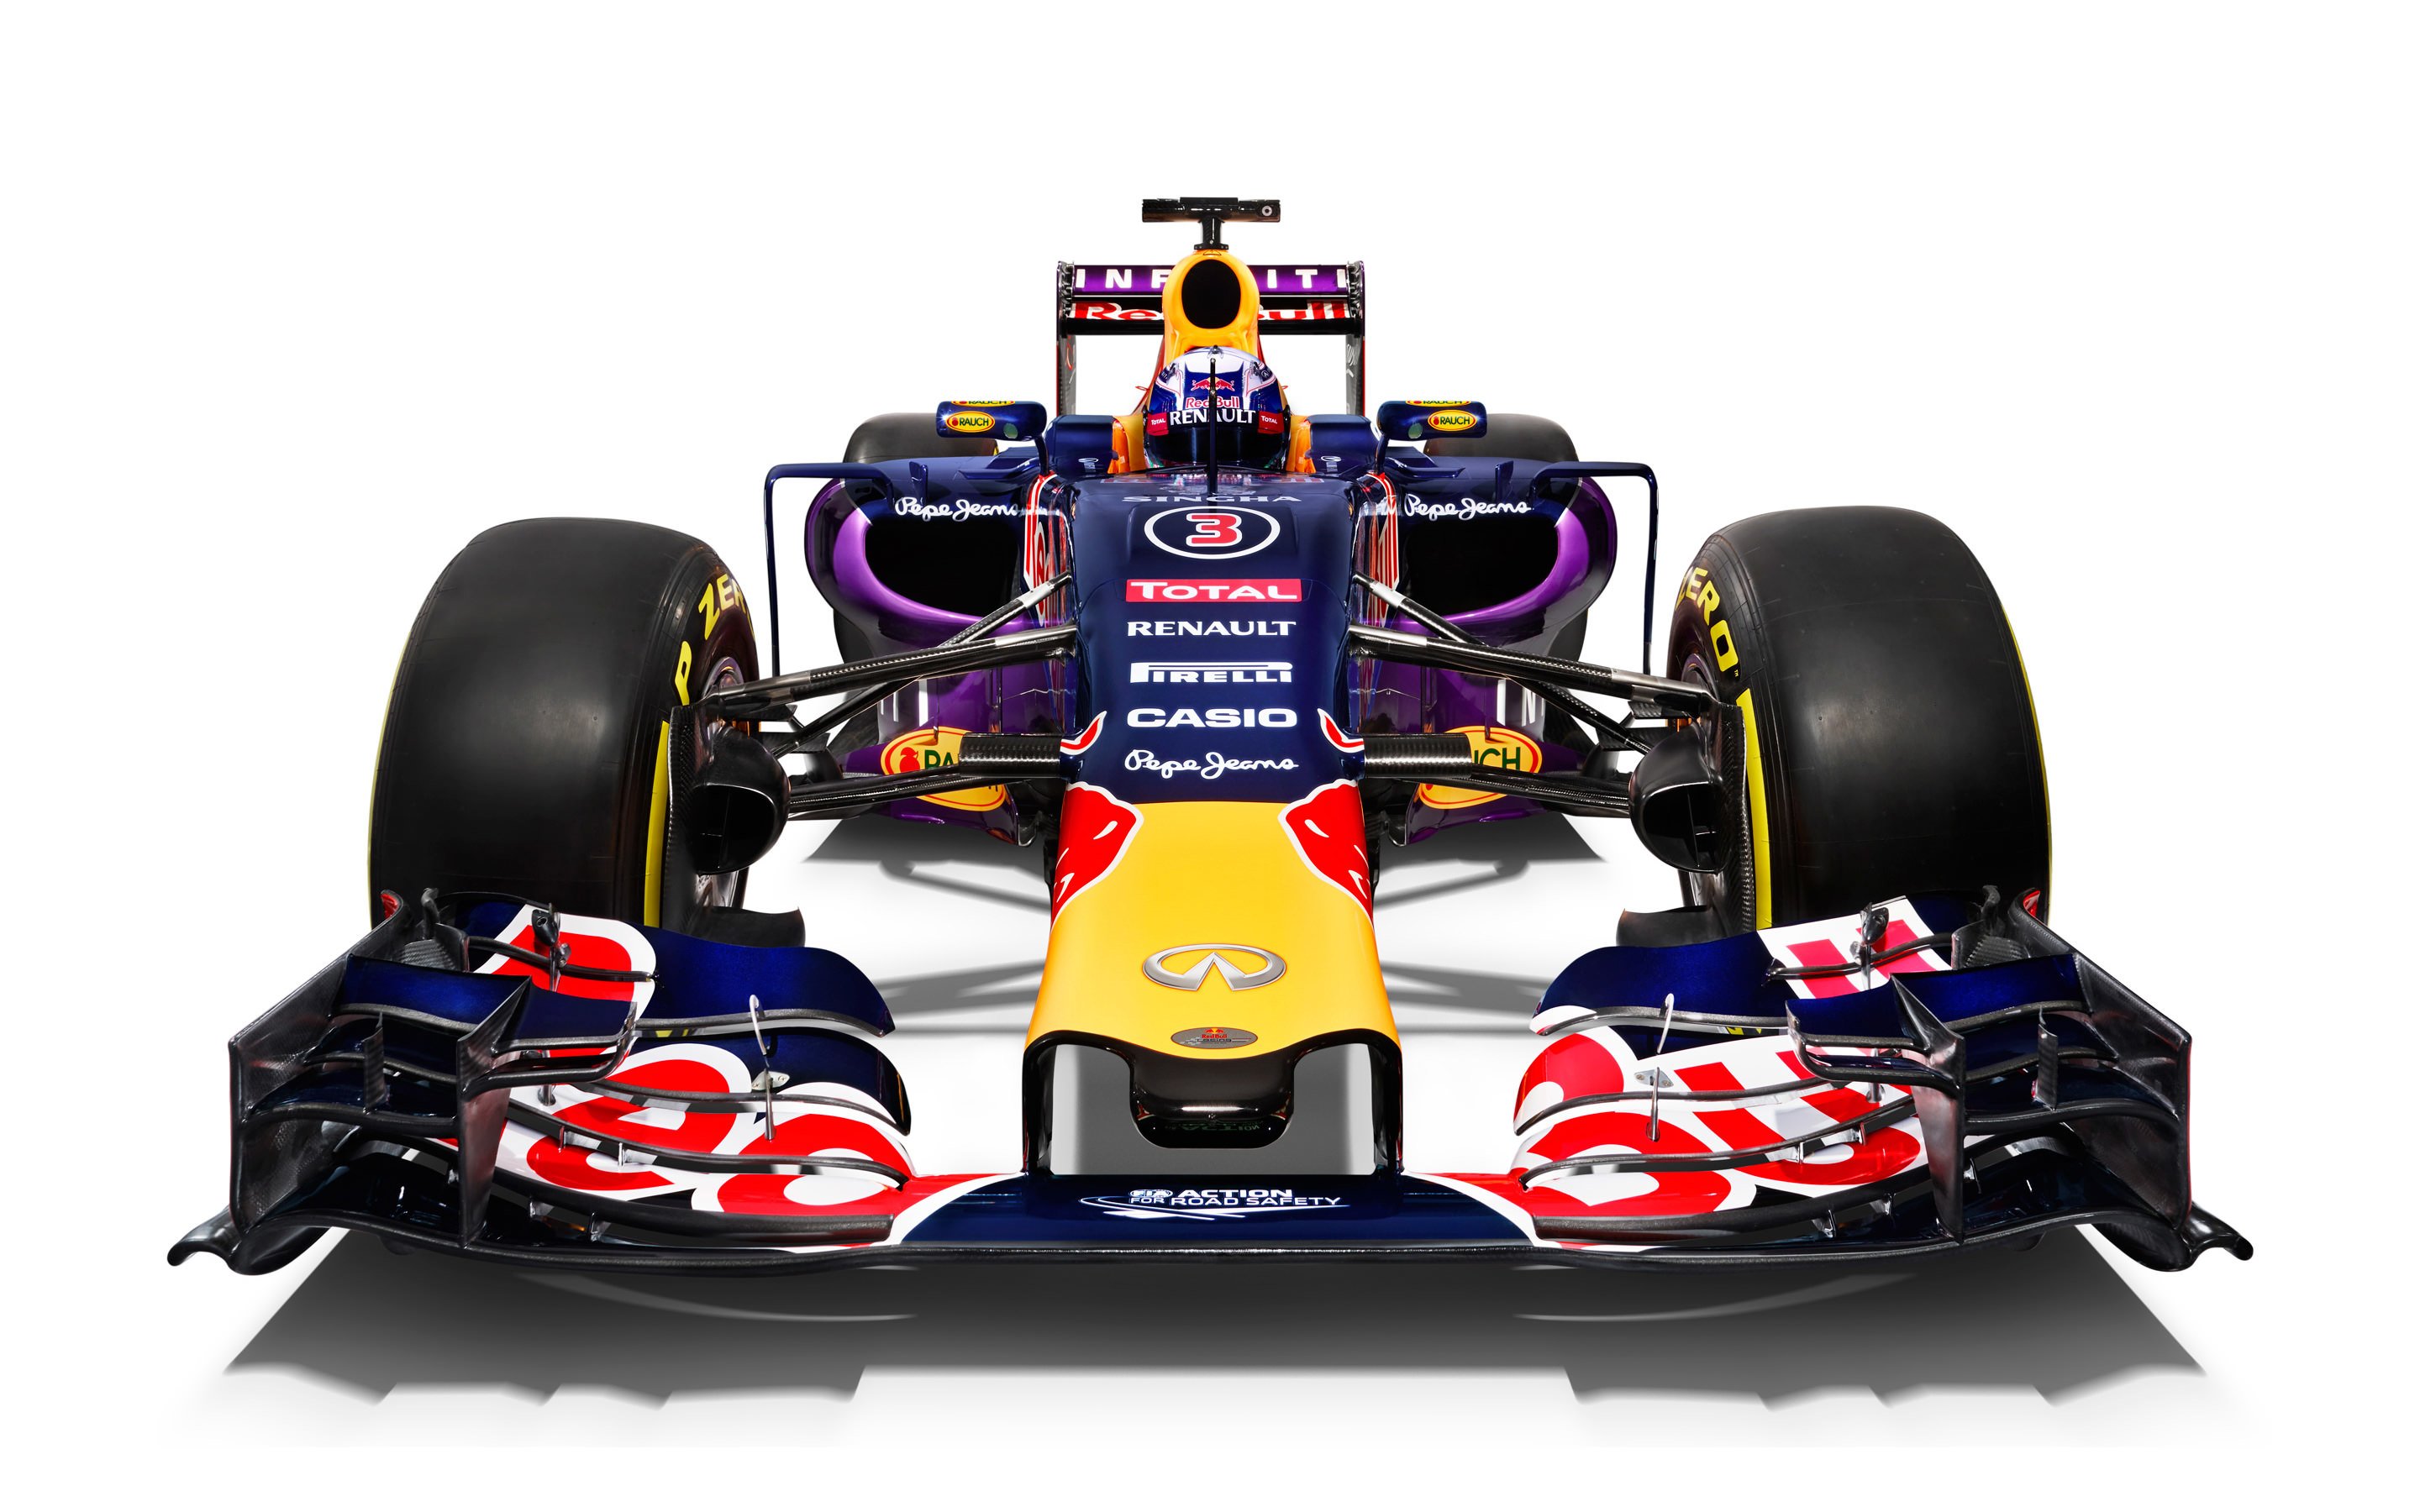 Infiniti Red Bull Racing RB11 2015 Formula 1 Car Wallpaper for Desktop 2880x1800